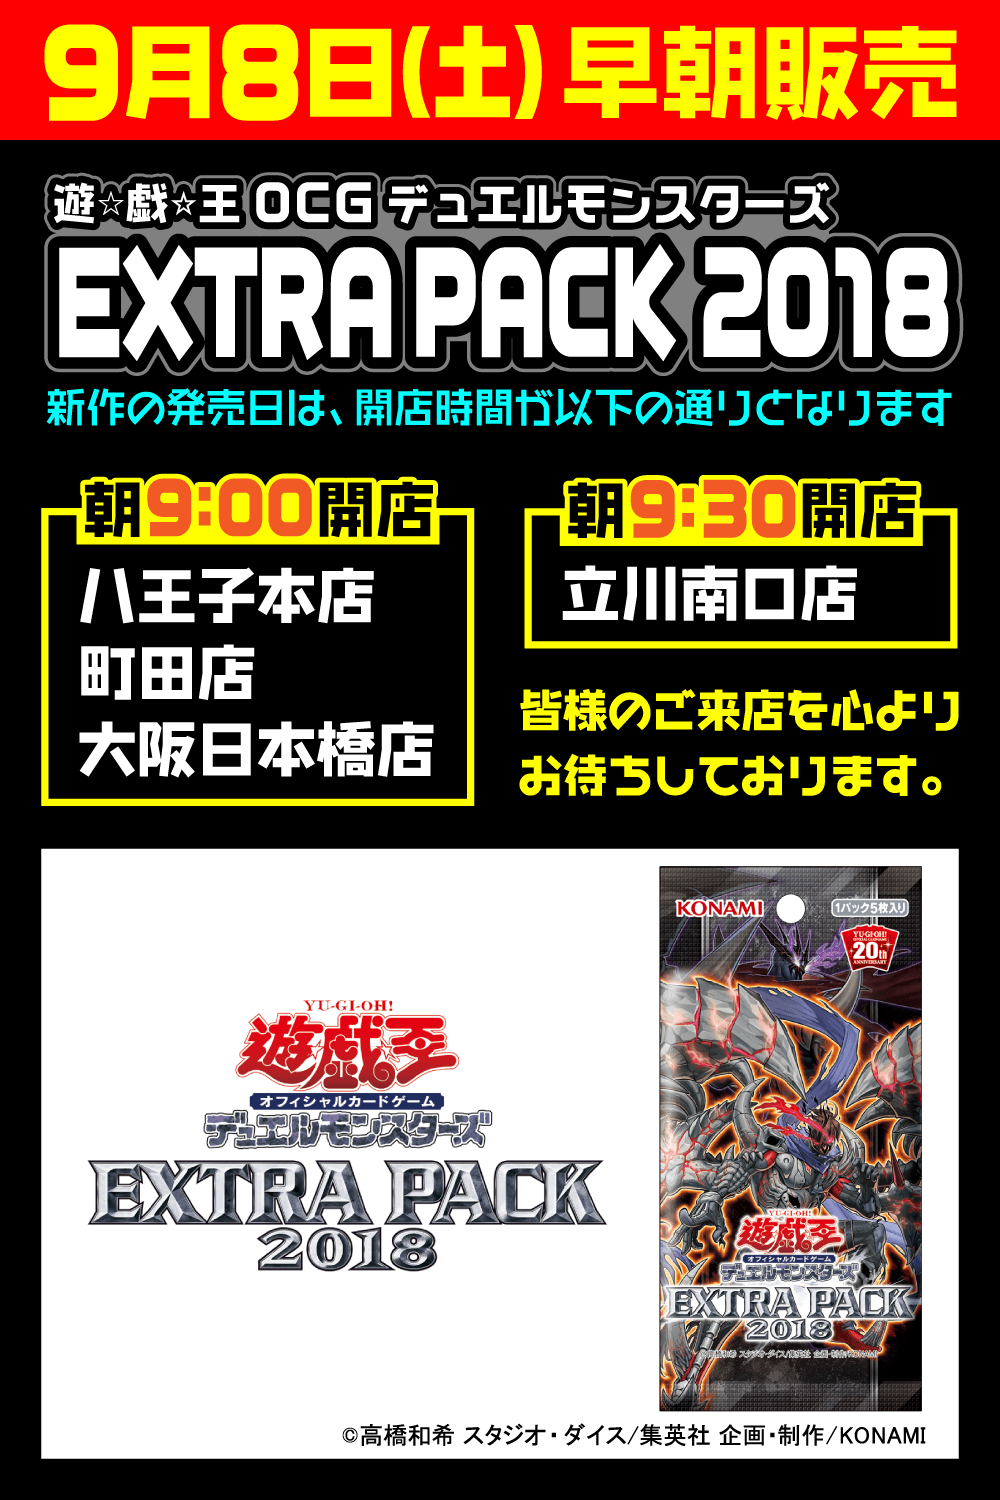 遊戯王 EXTRA PACK 2018 早朝販売